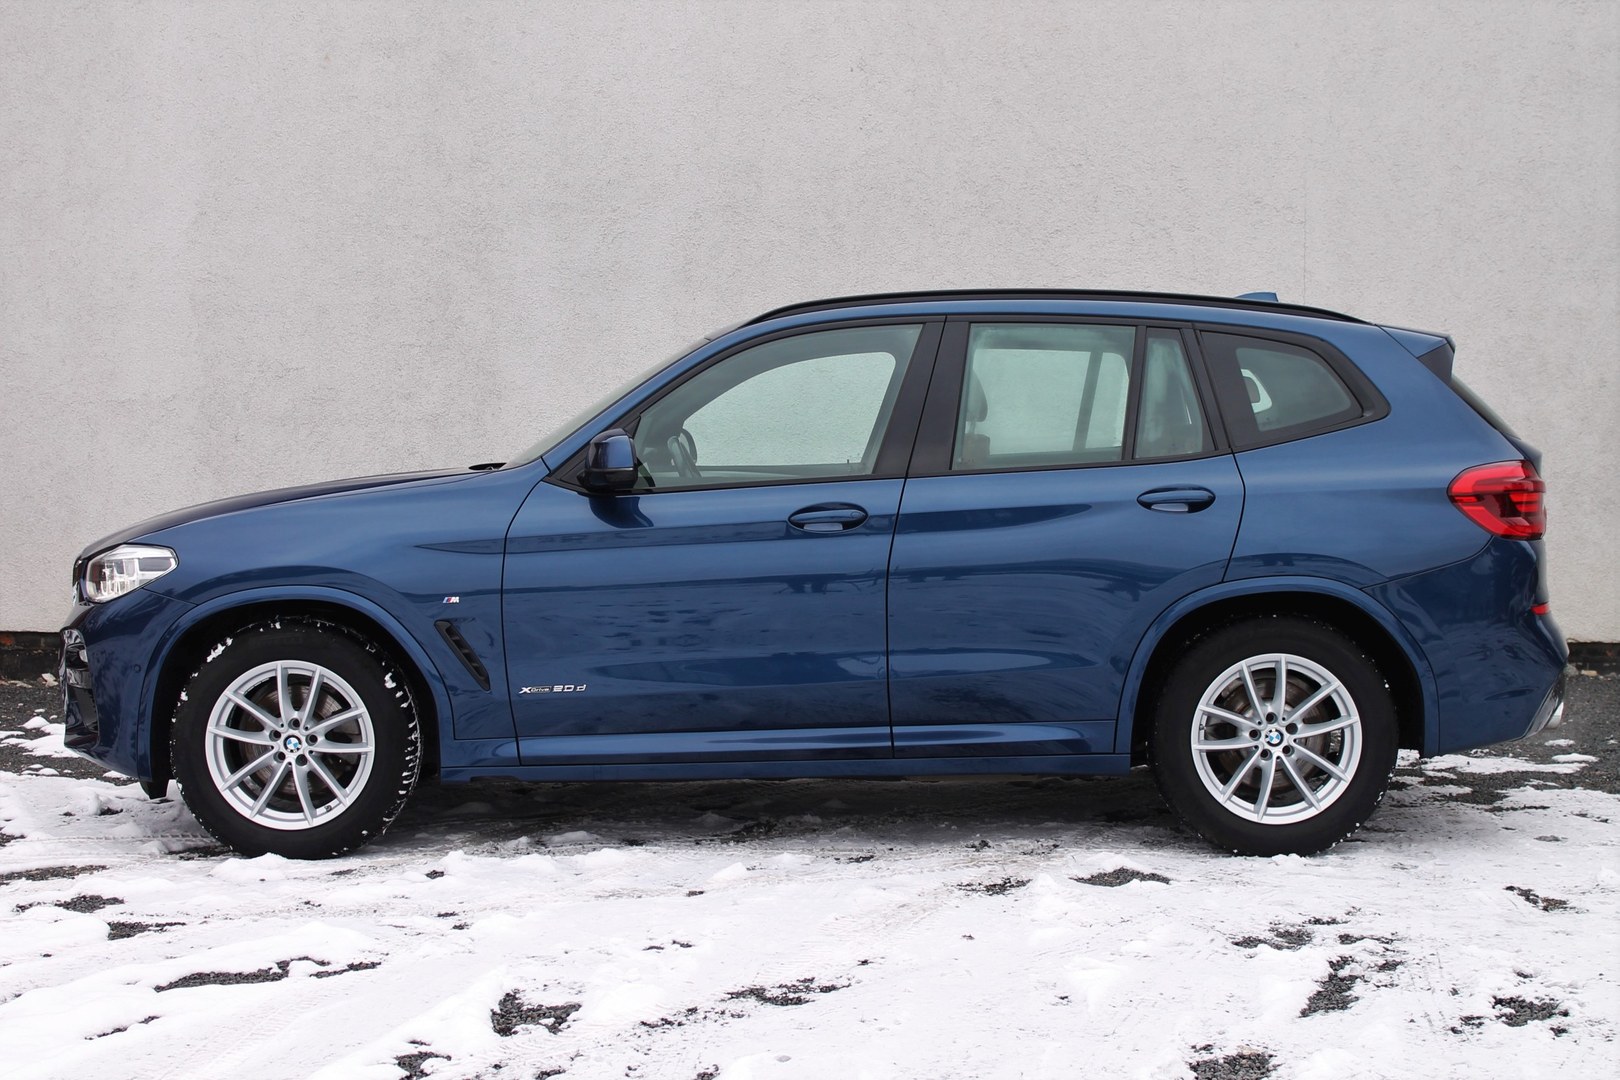 BMW X3 xDrive20d Niebieski używany Autoryzowany Serwis